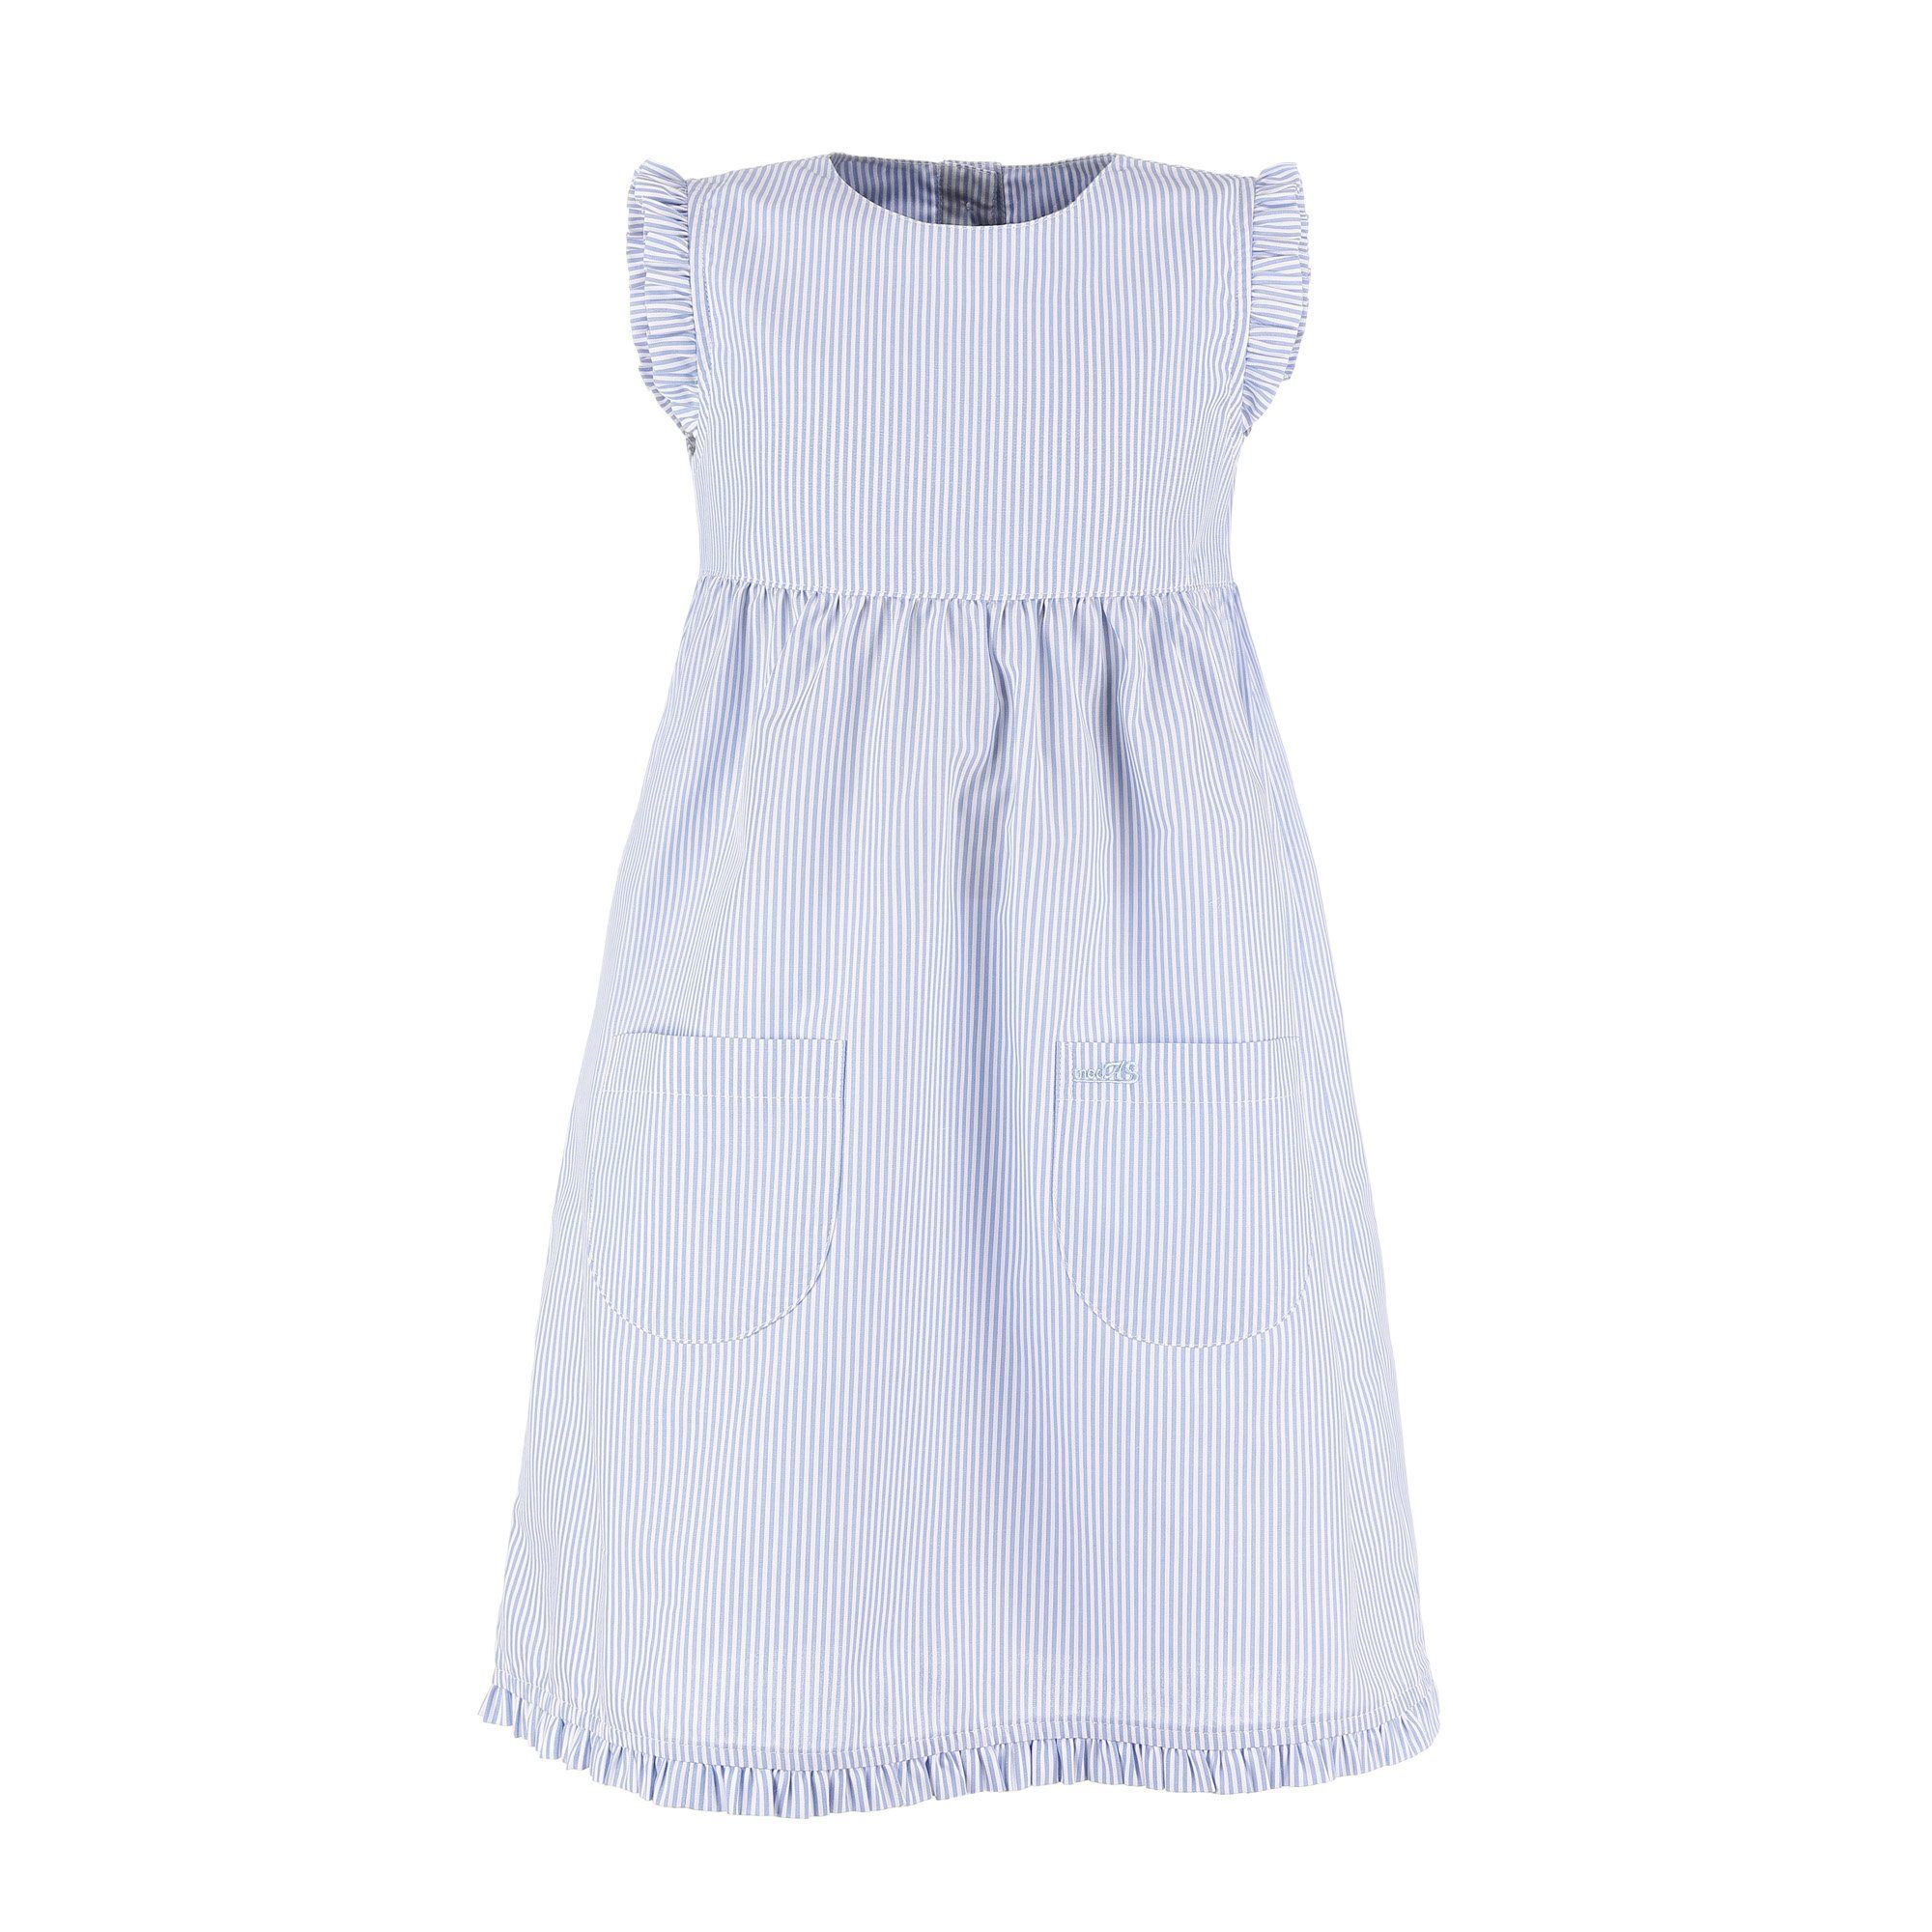 modAS Sommerkleid Kinder Kleid gestreift mit Rüschen - Mädchenkleid mit Streifen (073) azur/weiß gestreift